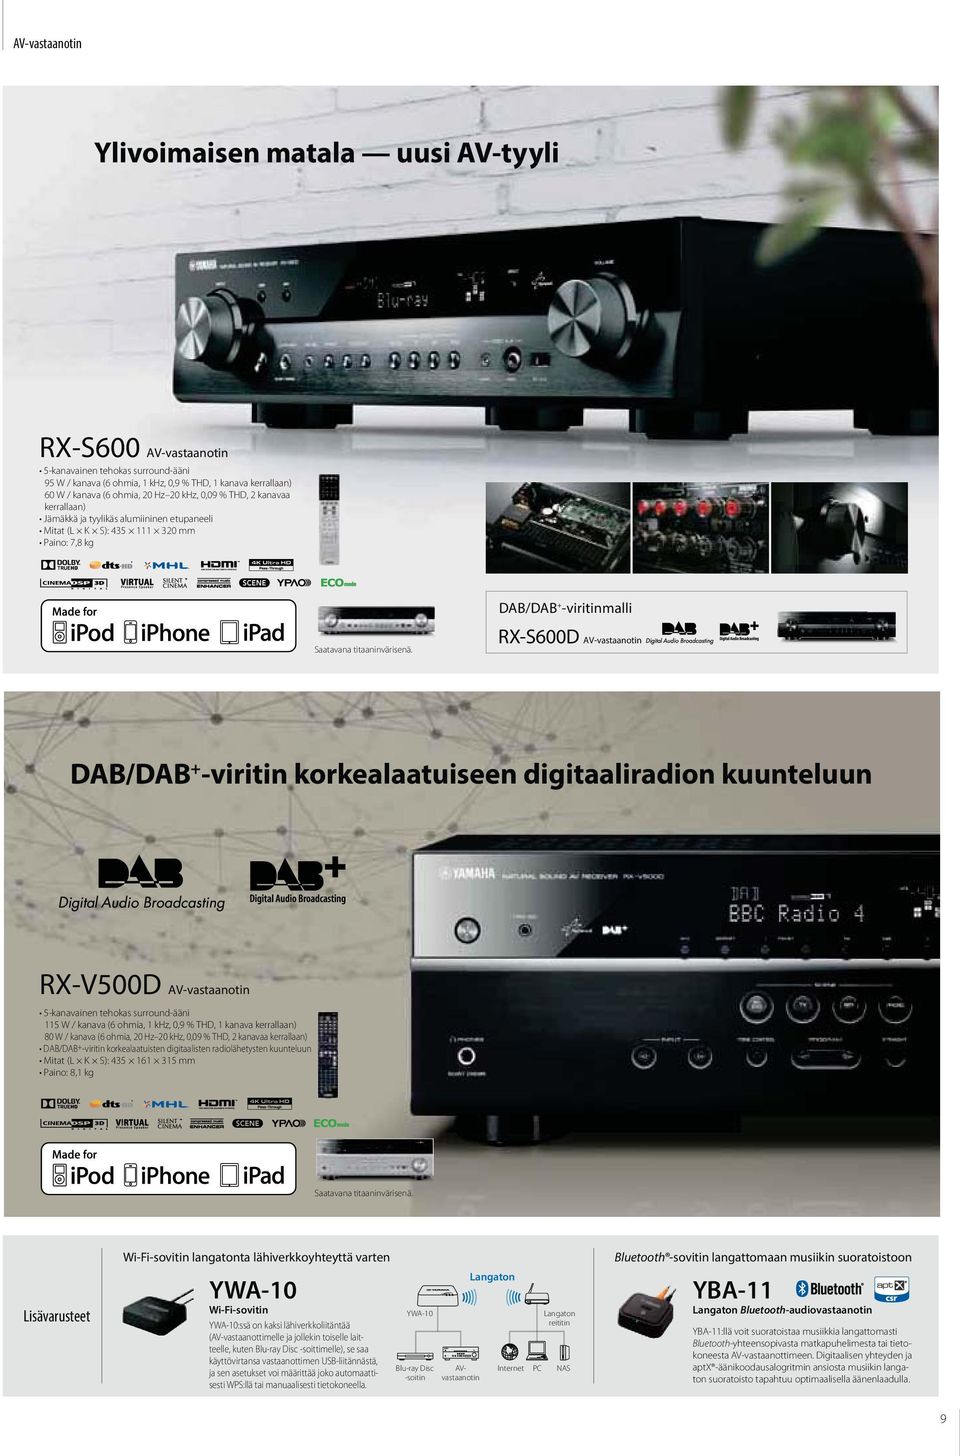 DAB/DAB + -viritin korkealaatuiseen digitaaliradion kuunteluun 5-kanavainen tehokas surround-ääni 115 W / kanava (6 ohmia, 1 khz, 0,9 % THD, 1 kanava kerrallaan) 80 W / kanava (6 ohmia, 20 Hz 20 khz,